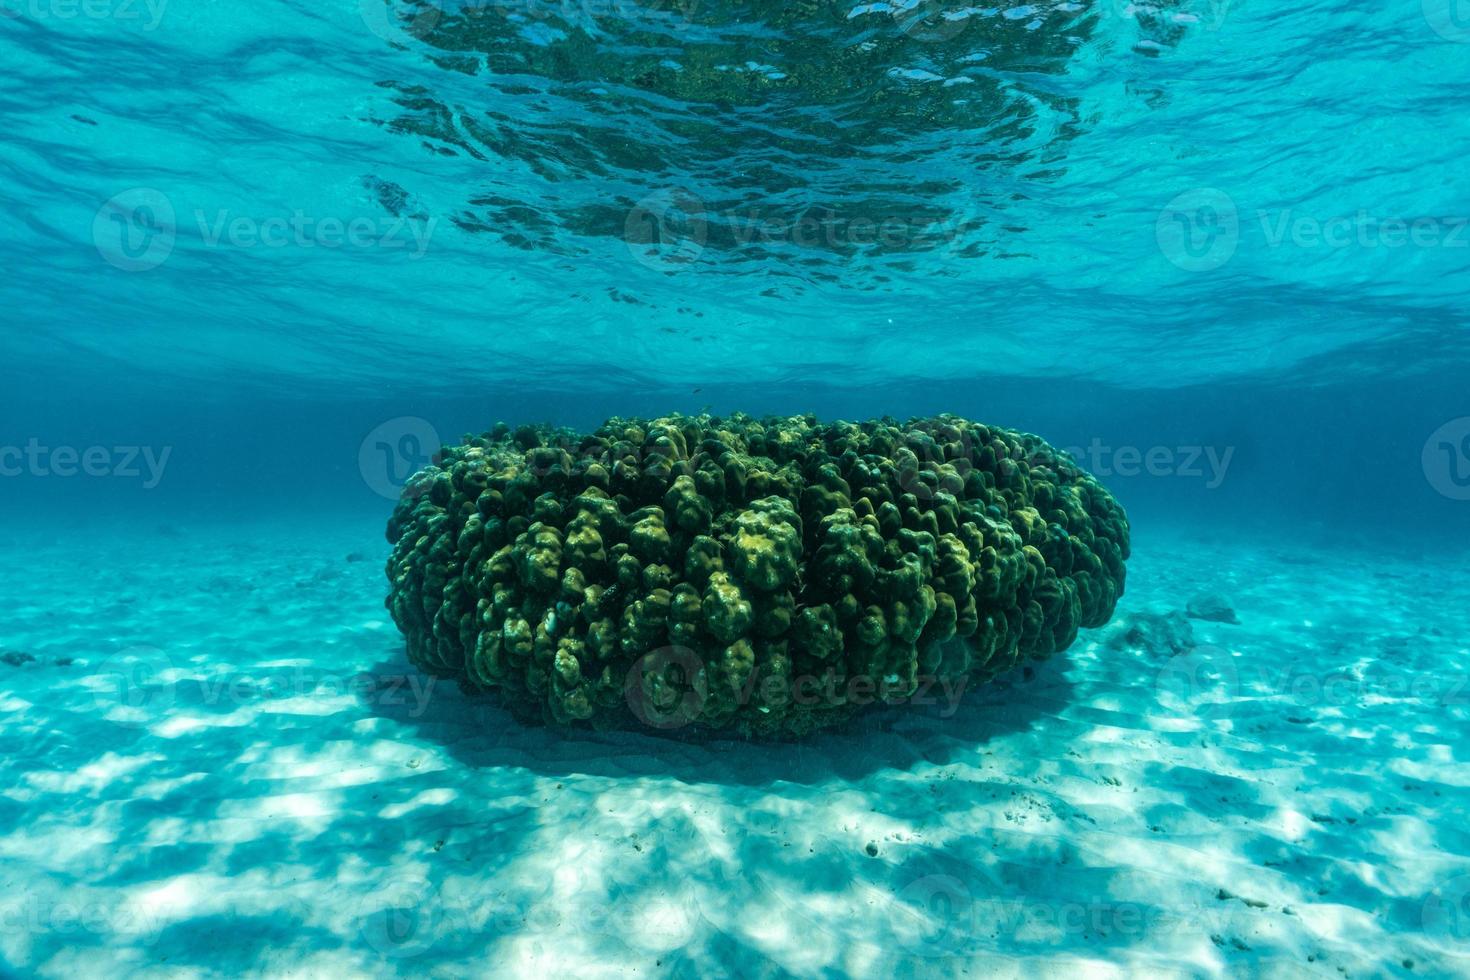 undervattensscen med korallrev och fisk. foto